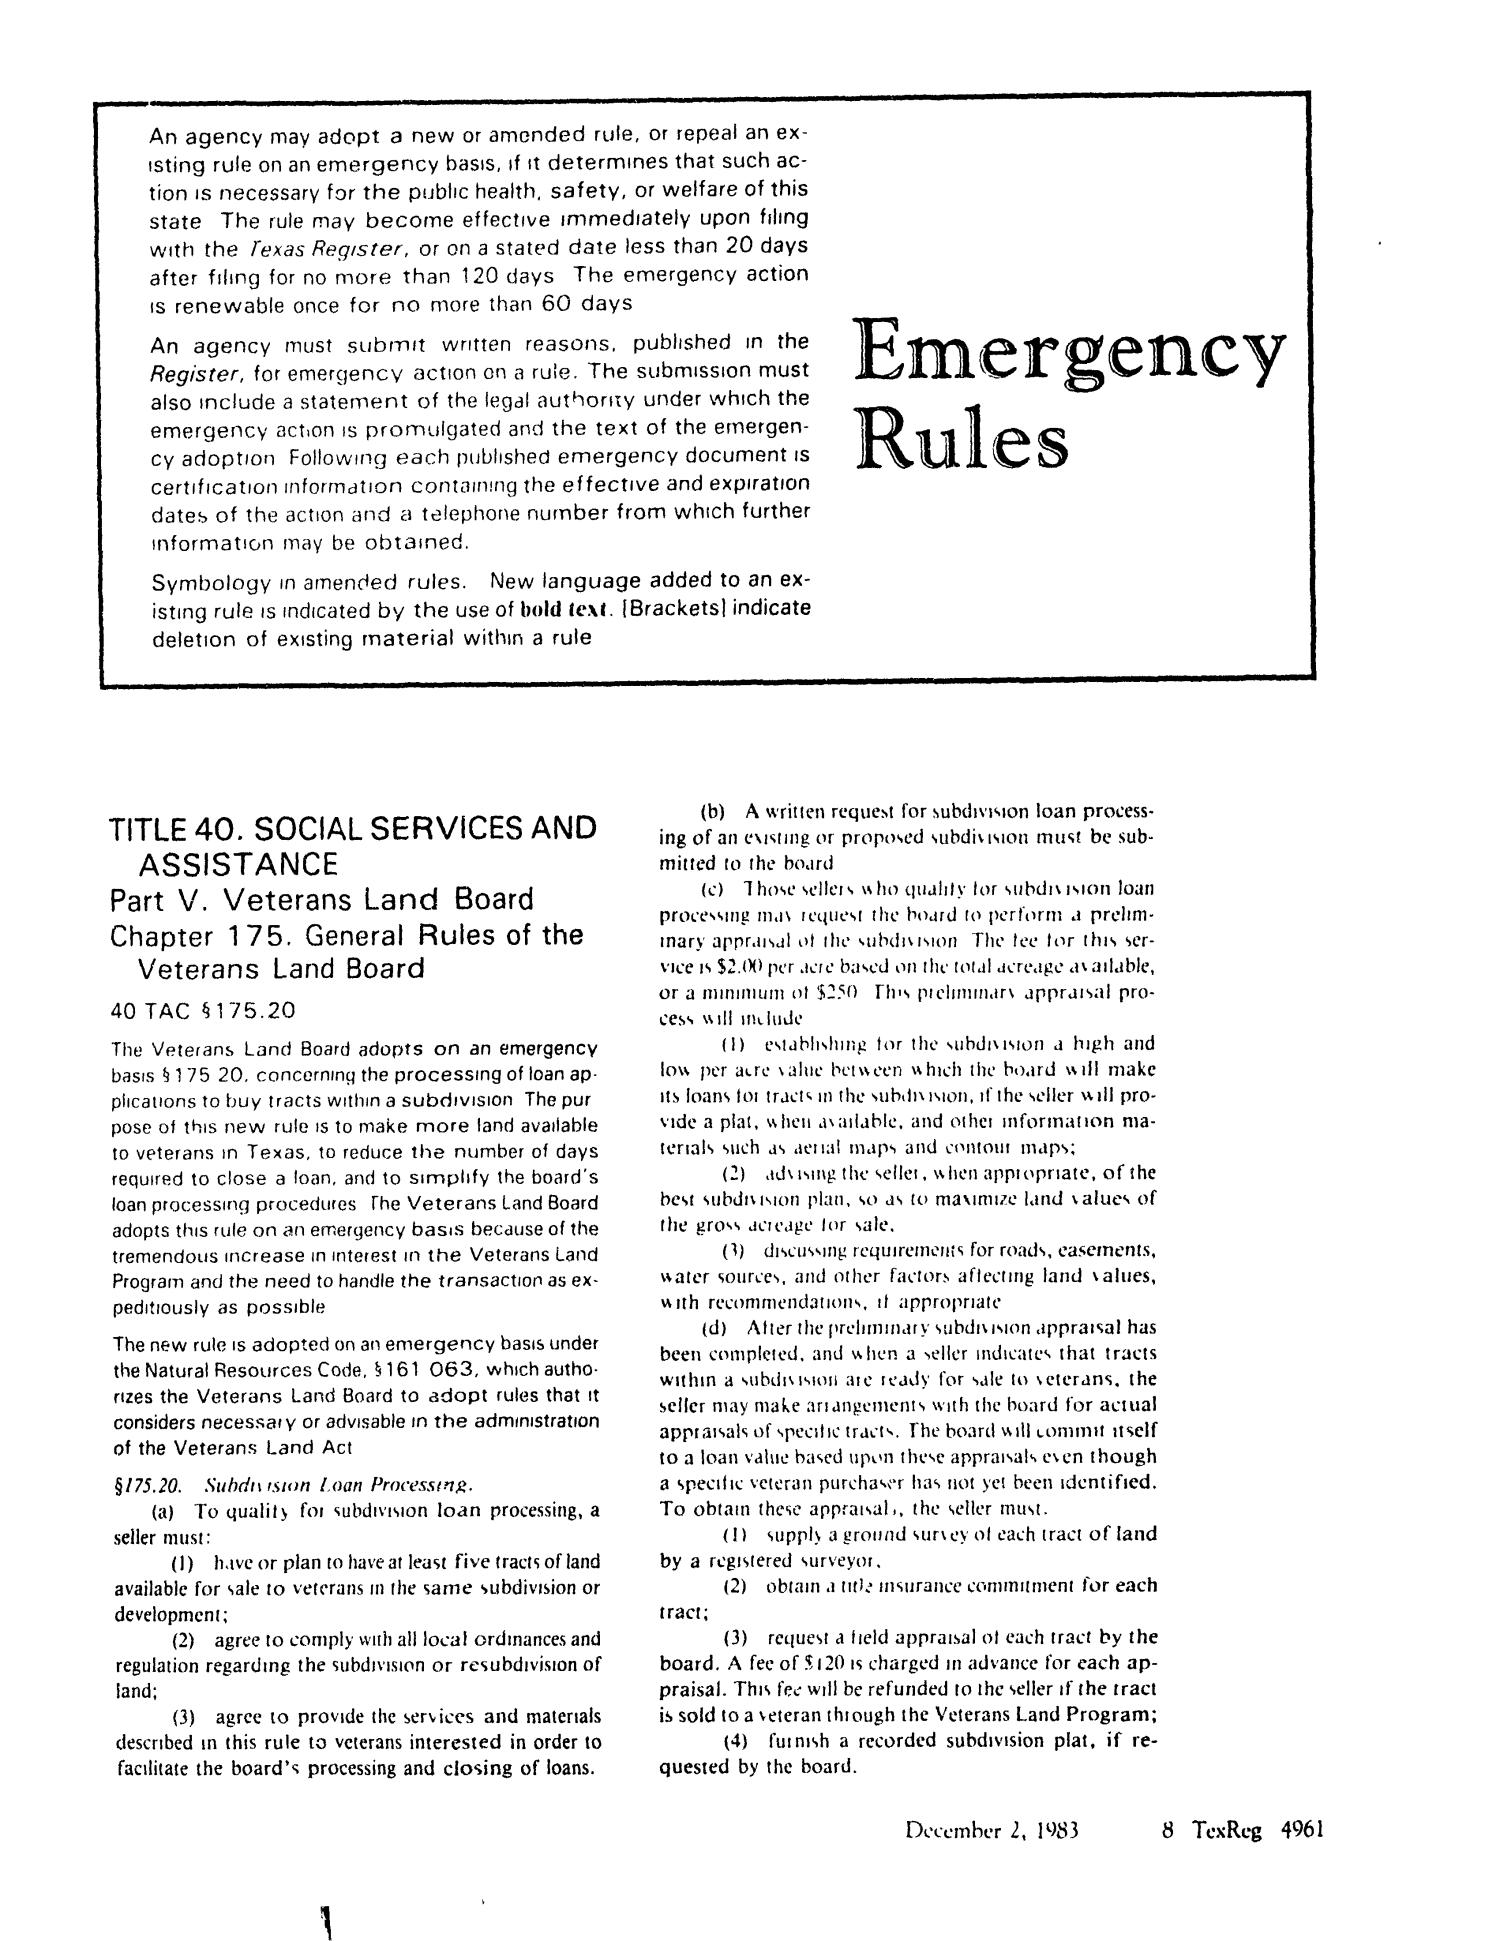 Texas Register, Volume 8, Number 88, Pages 4957-5004, December 2, 1983
                                                
                                                    4961
                                                